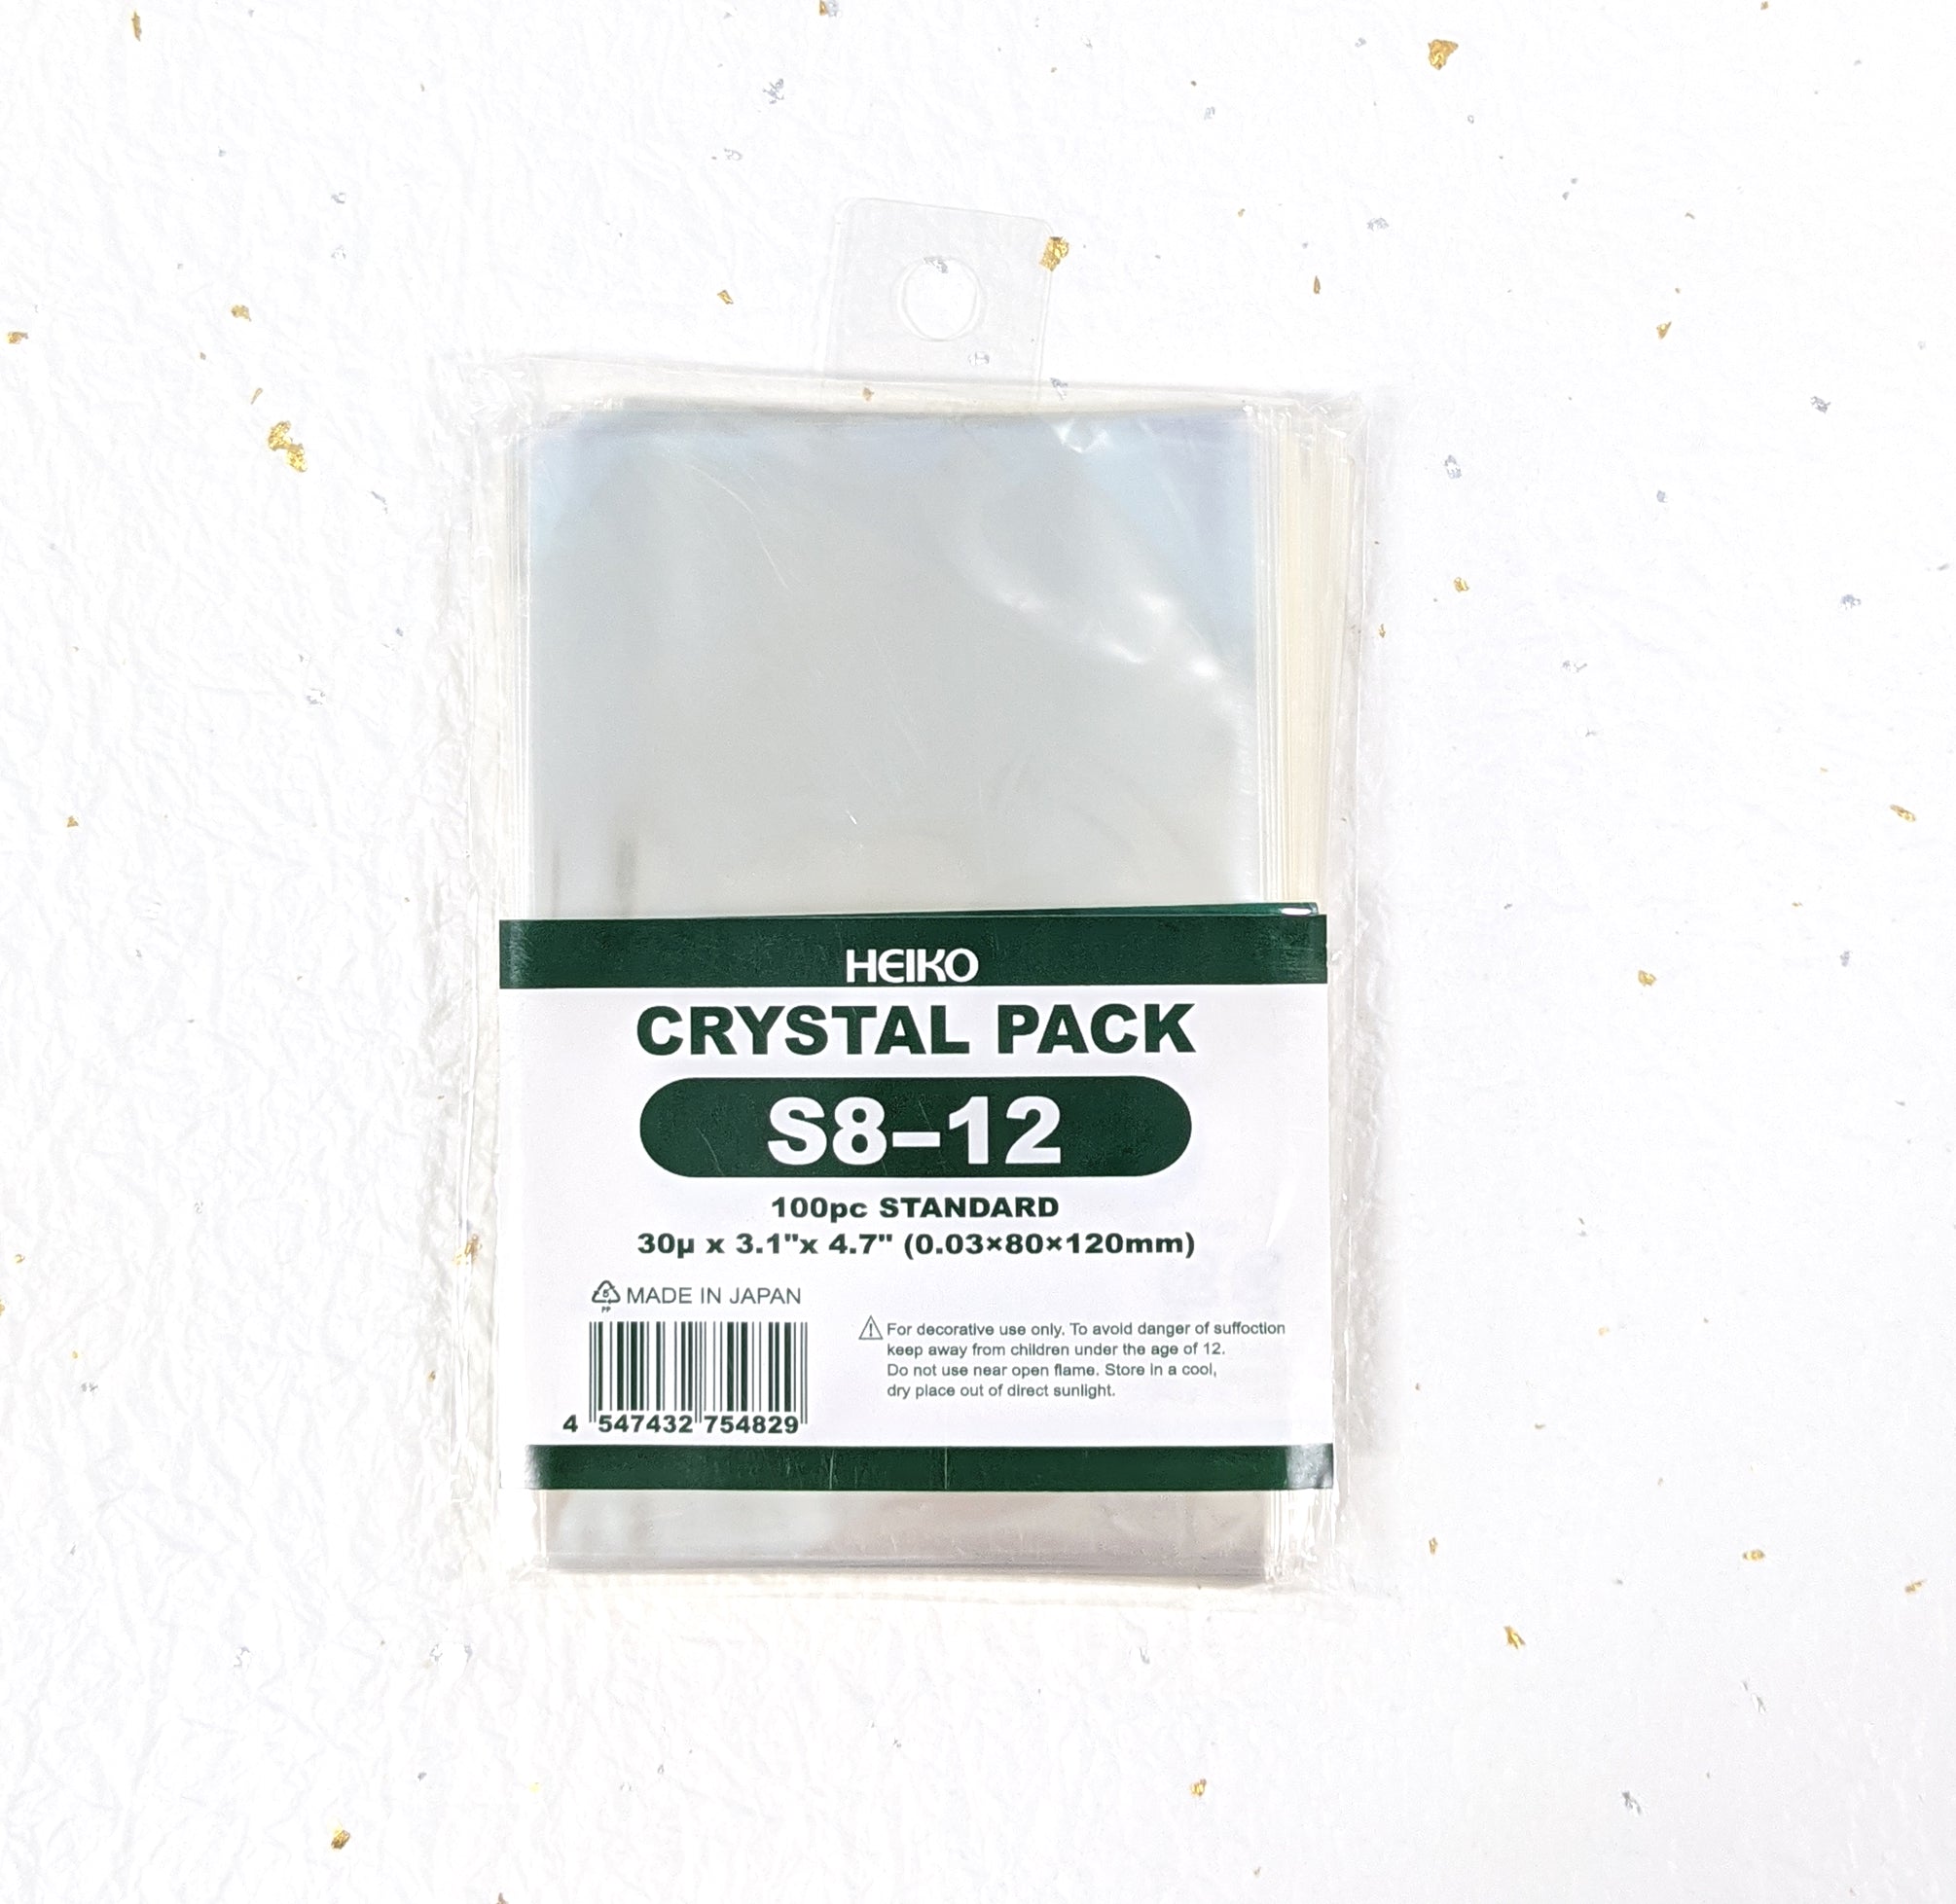 Crystal Pack 8 series